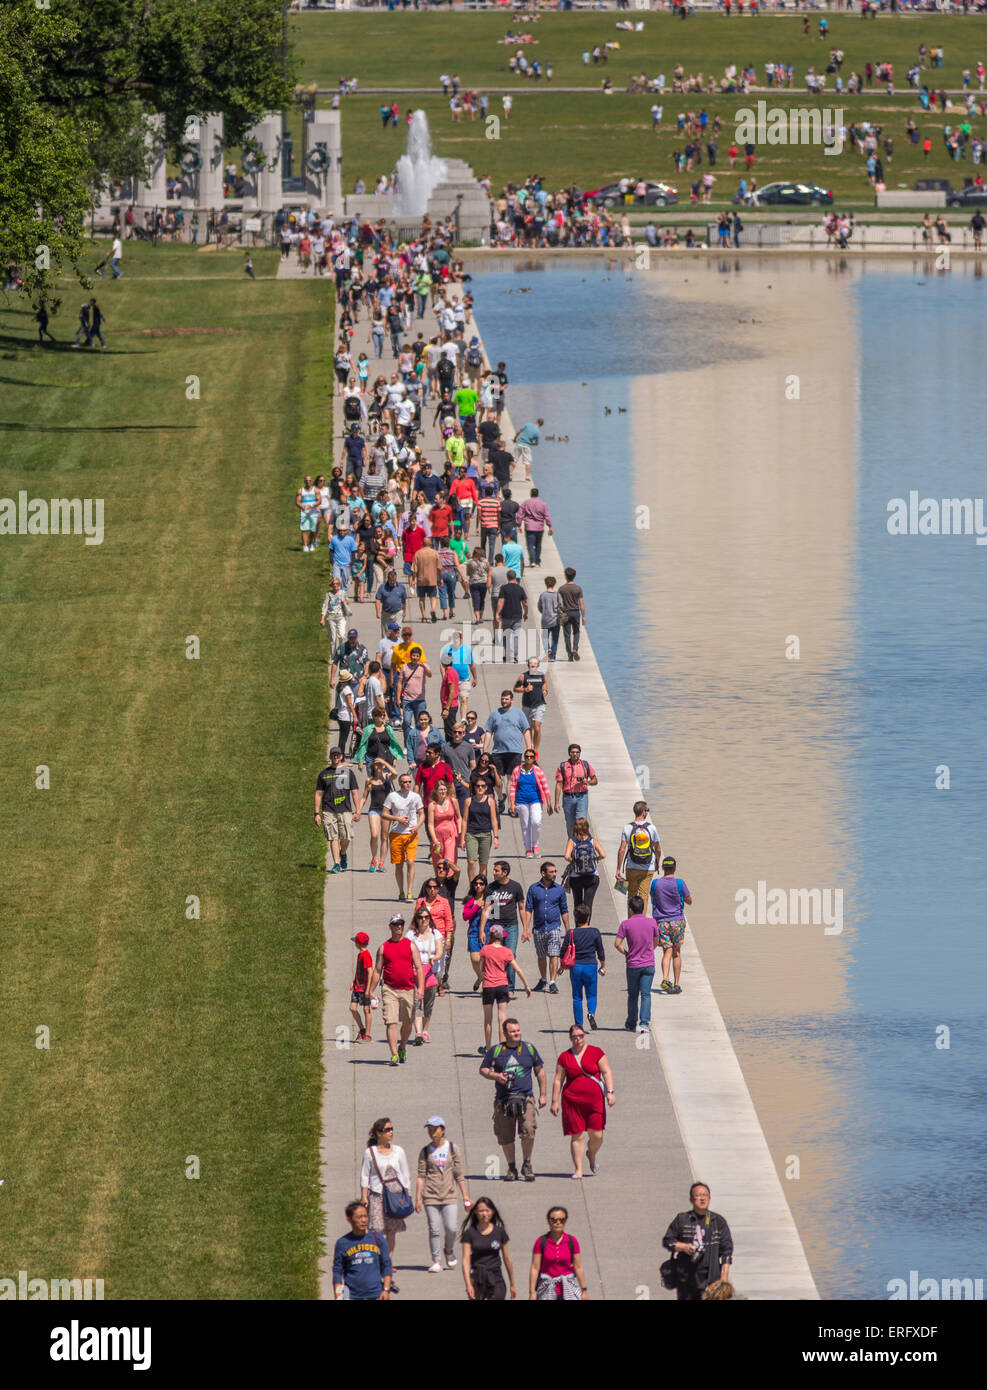 WASHINGTON, DC, USA - Les gens marchent le long d'un miroir d'eau sur le National Mall. Banque D'Images